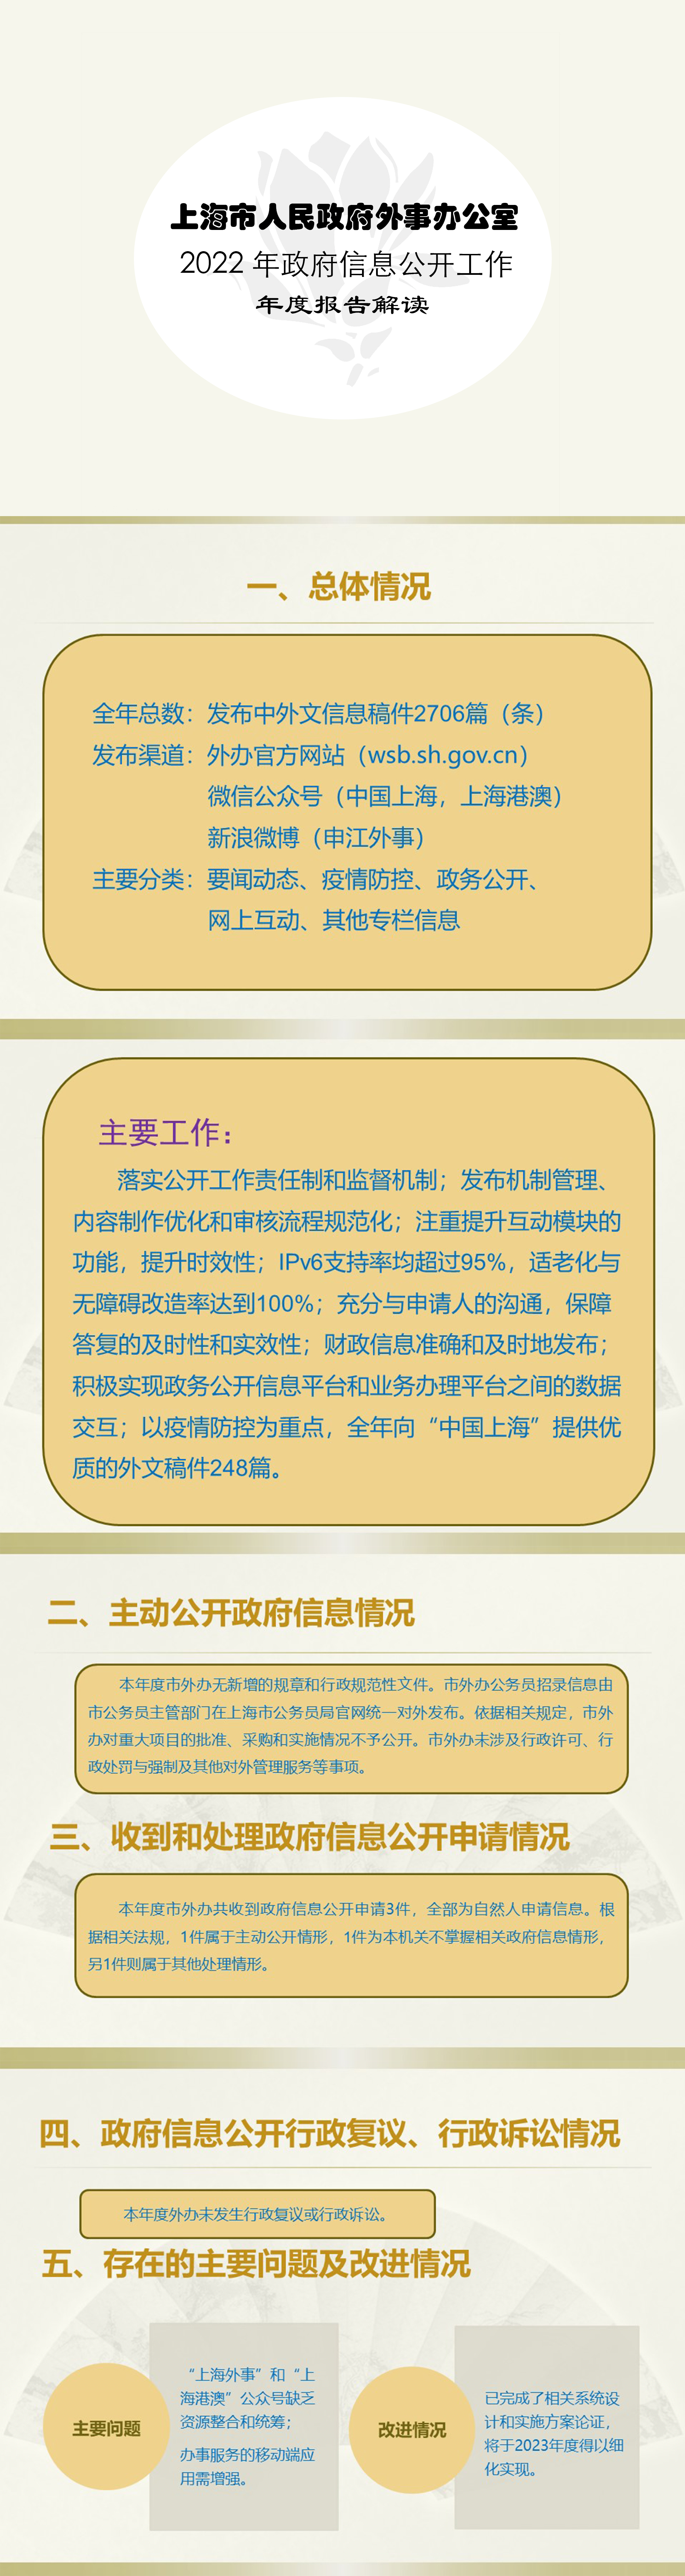 2022年度上海市人民政府外事办公室政府信息公开工作年度报告解读.jpg